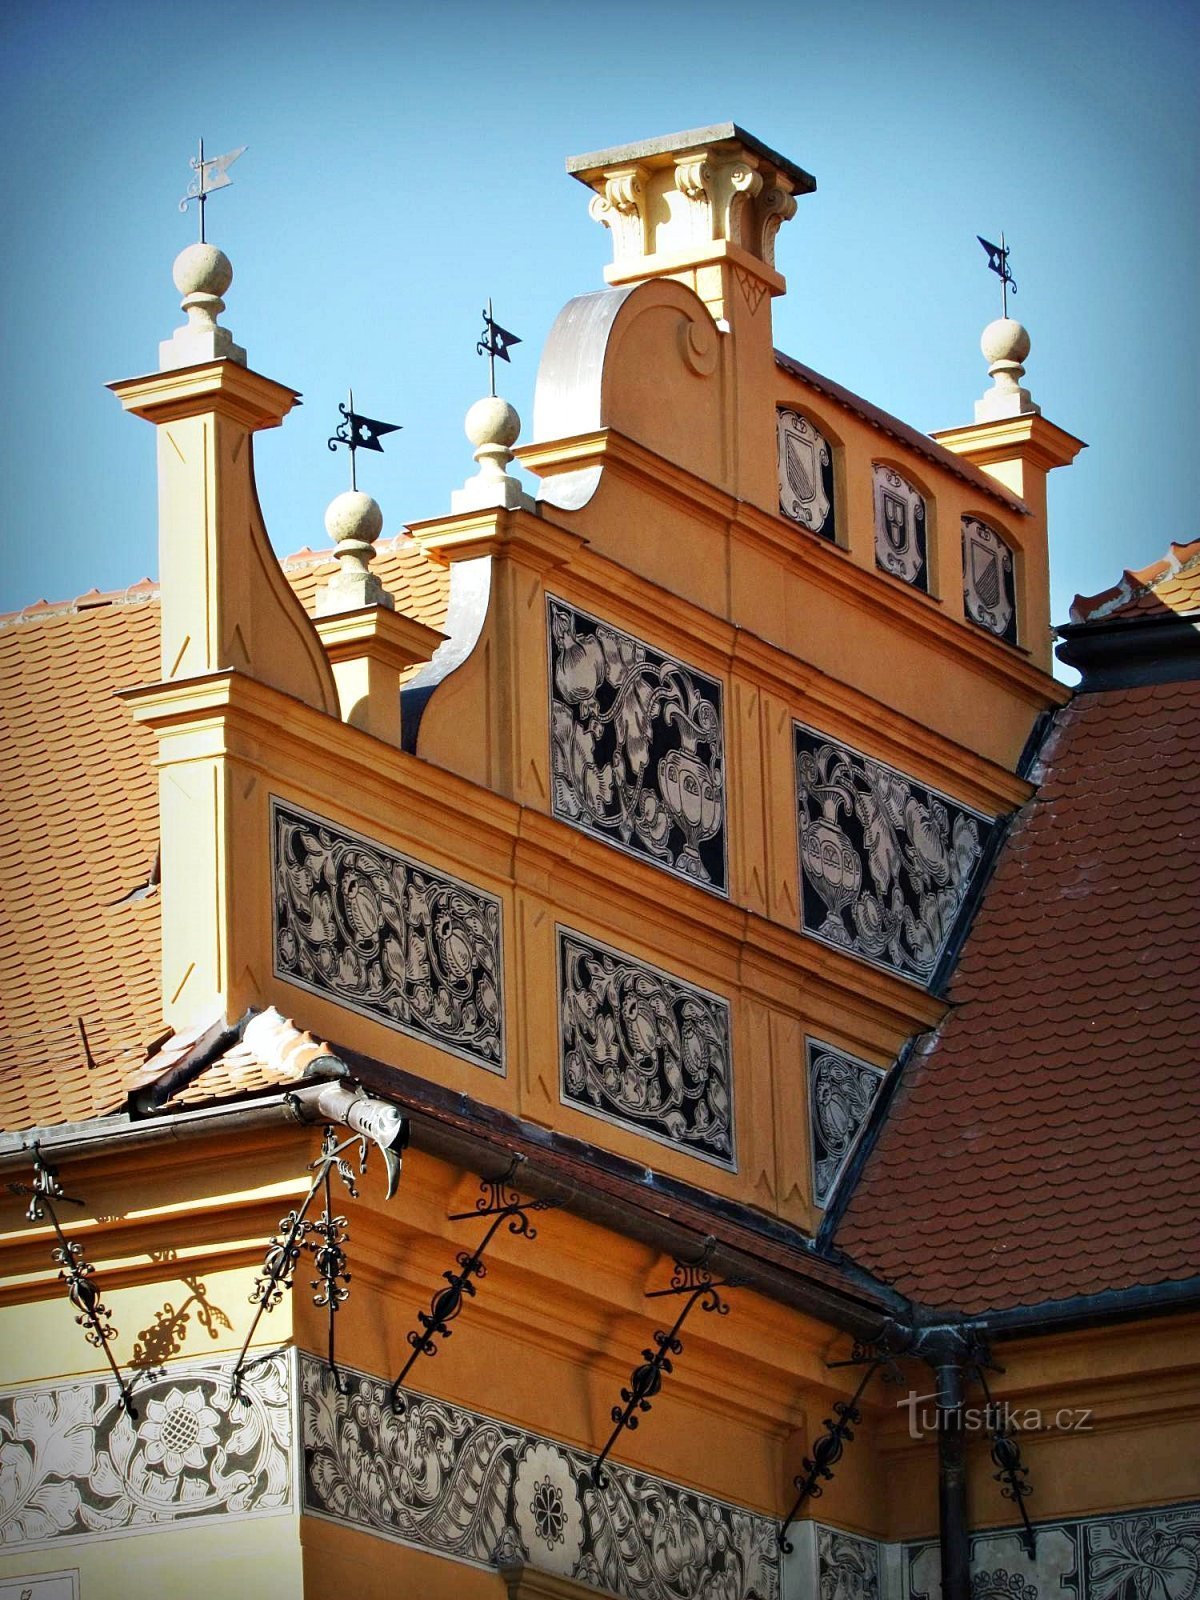 Dvorac Prostejov